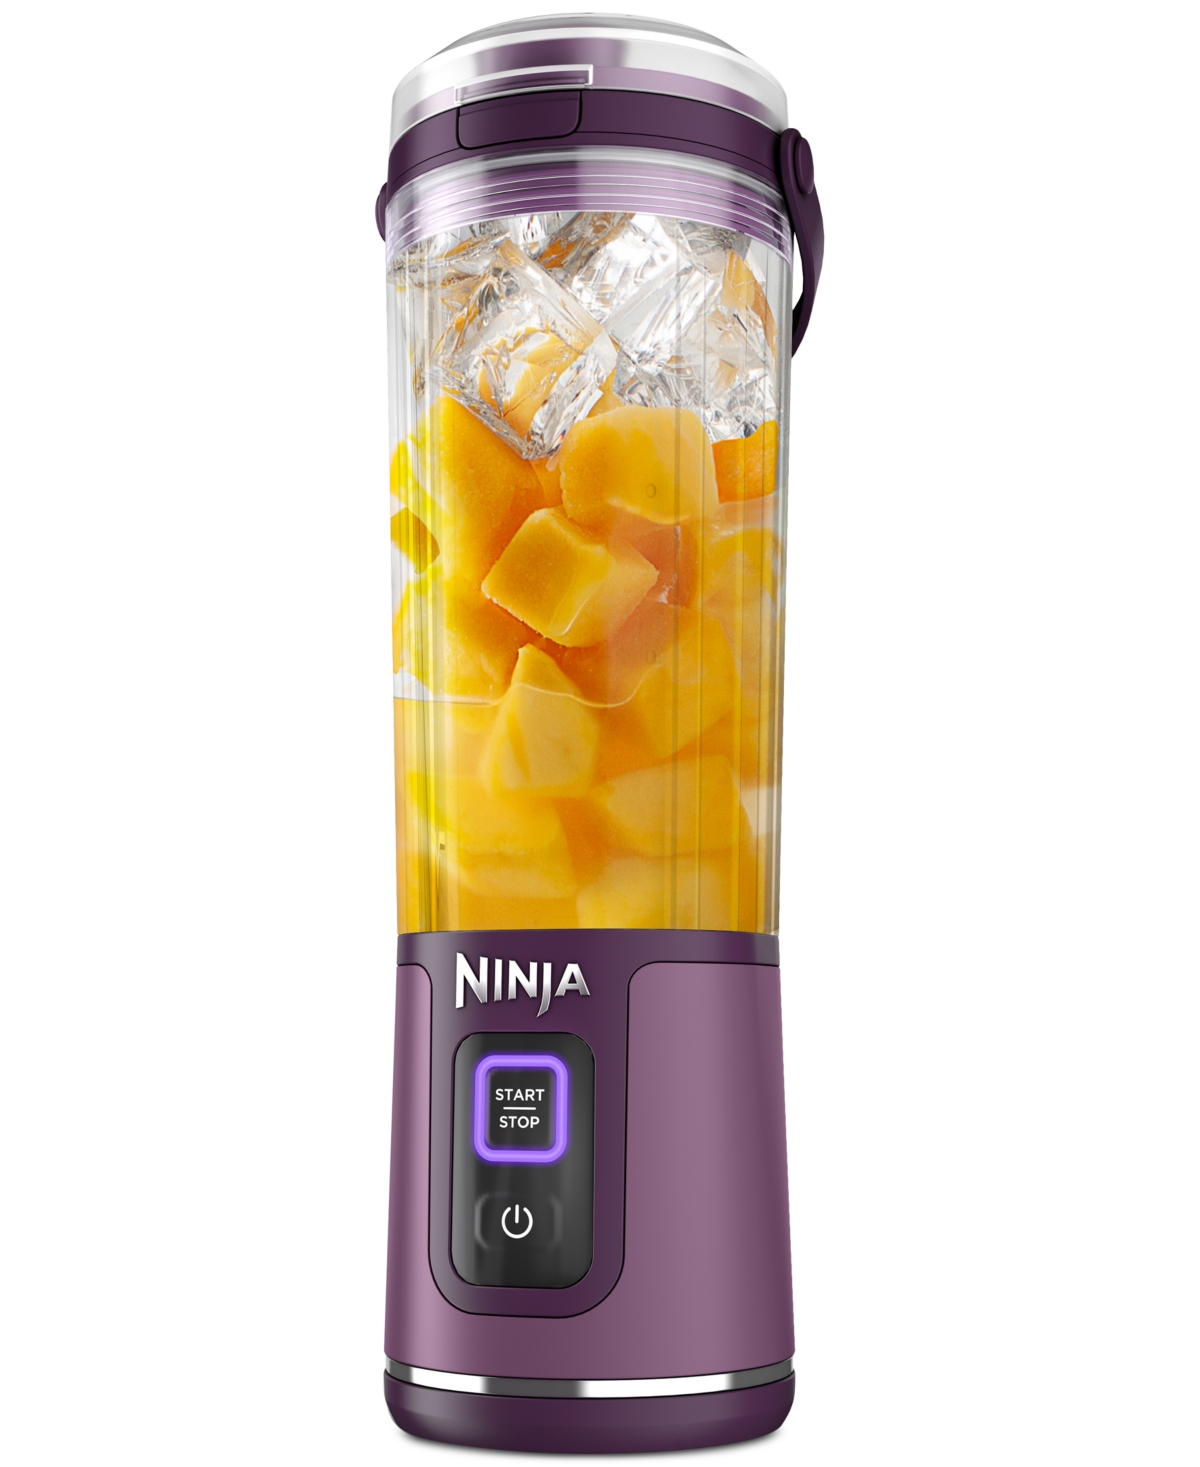 Ninja Blast Portable Blender In Passion Fruit